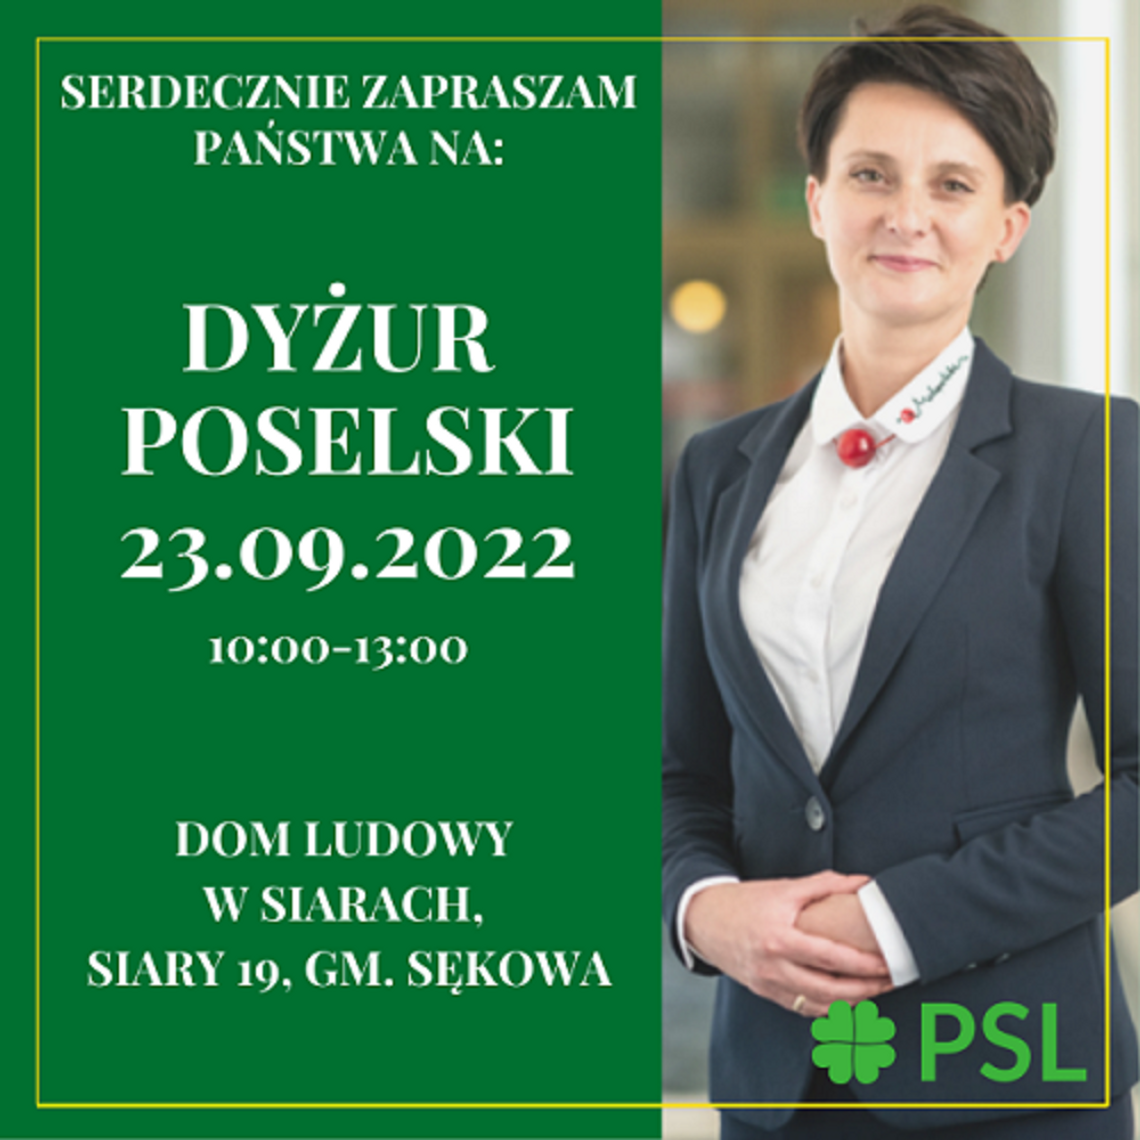 Urszula Nowogórska Poseł na Sejm RP zaprasza na dyżur do Siar